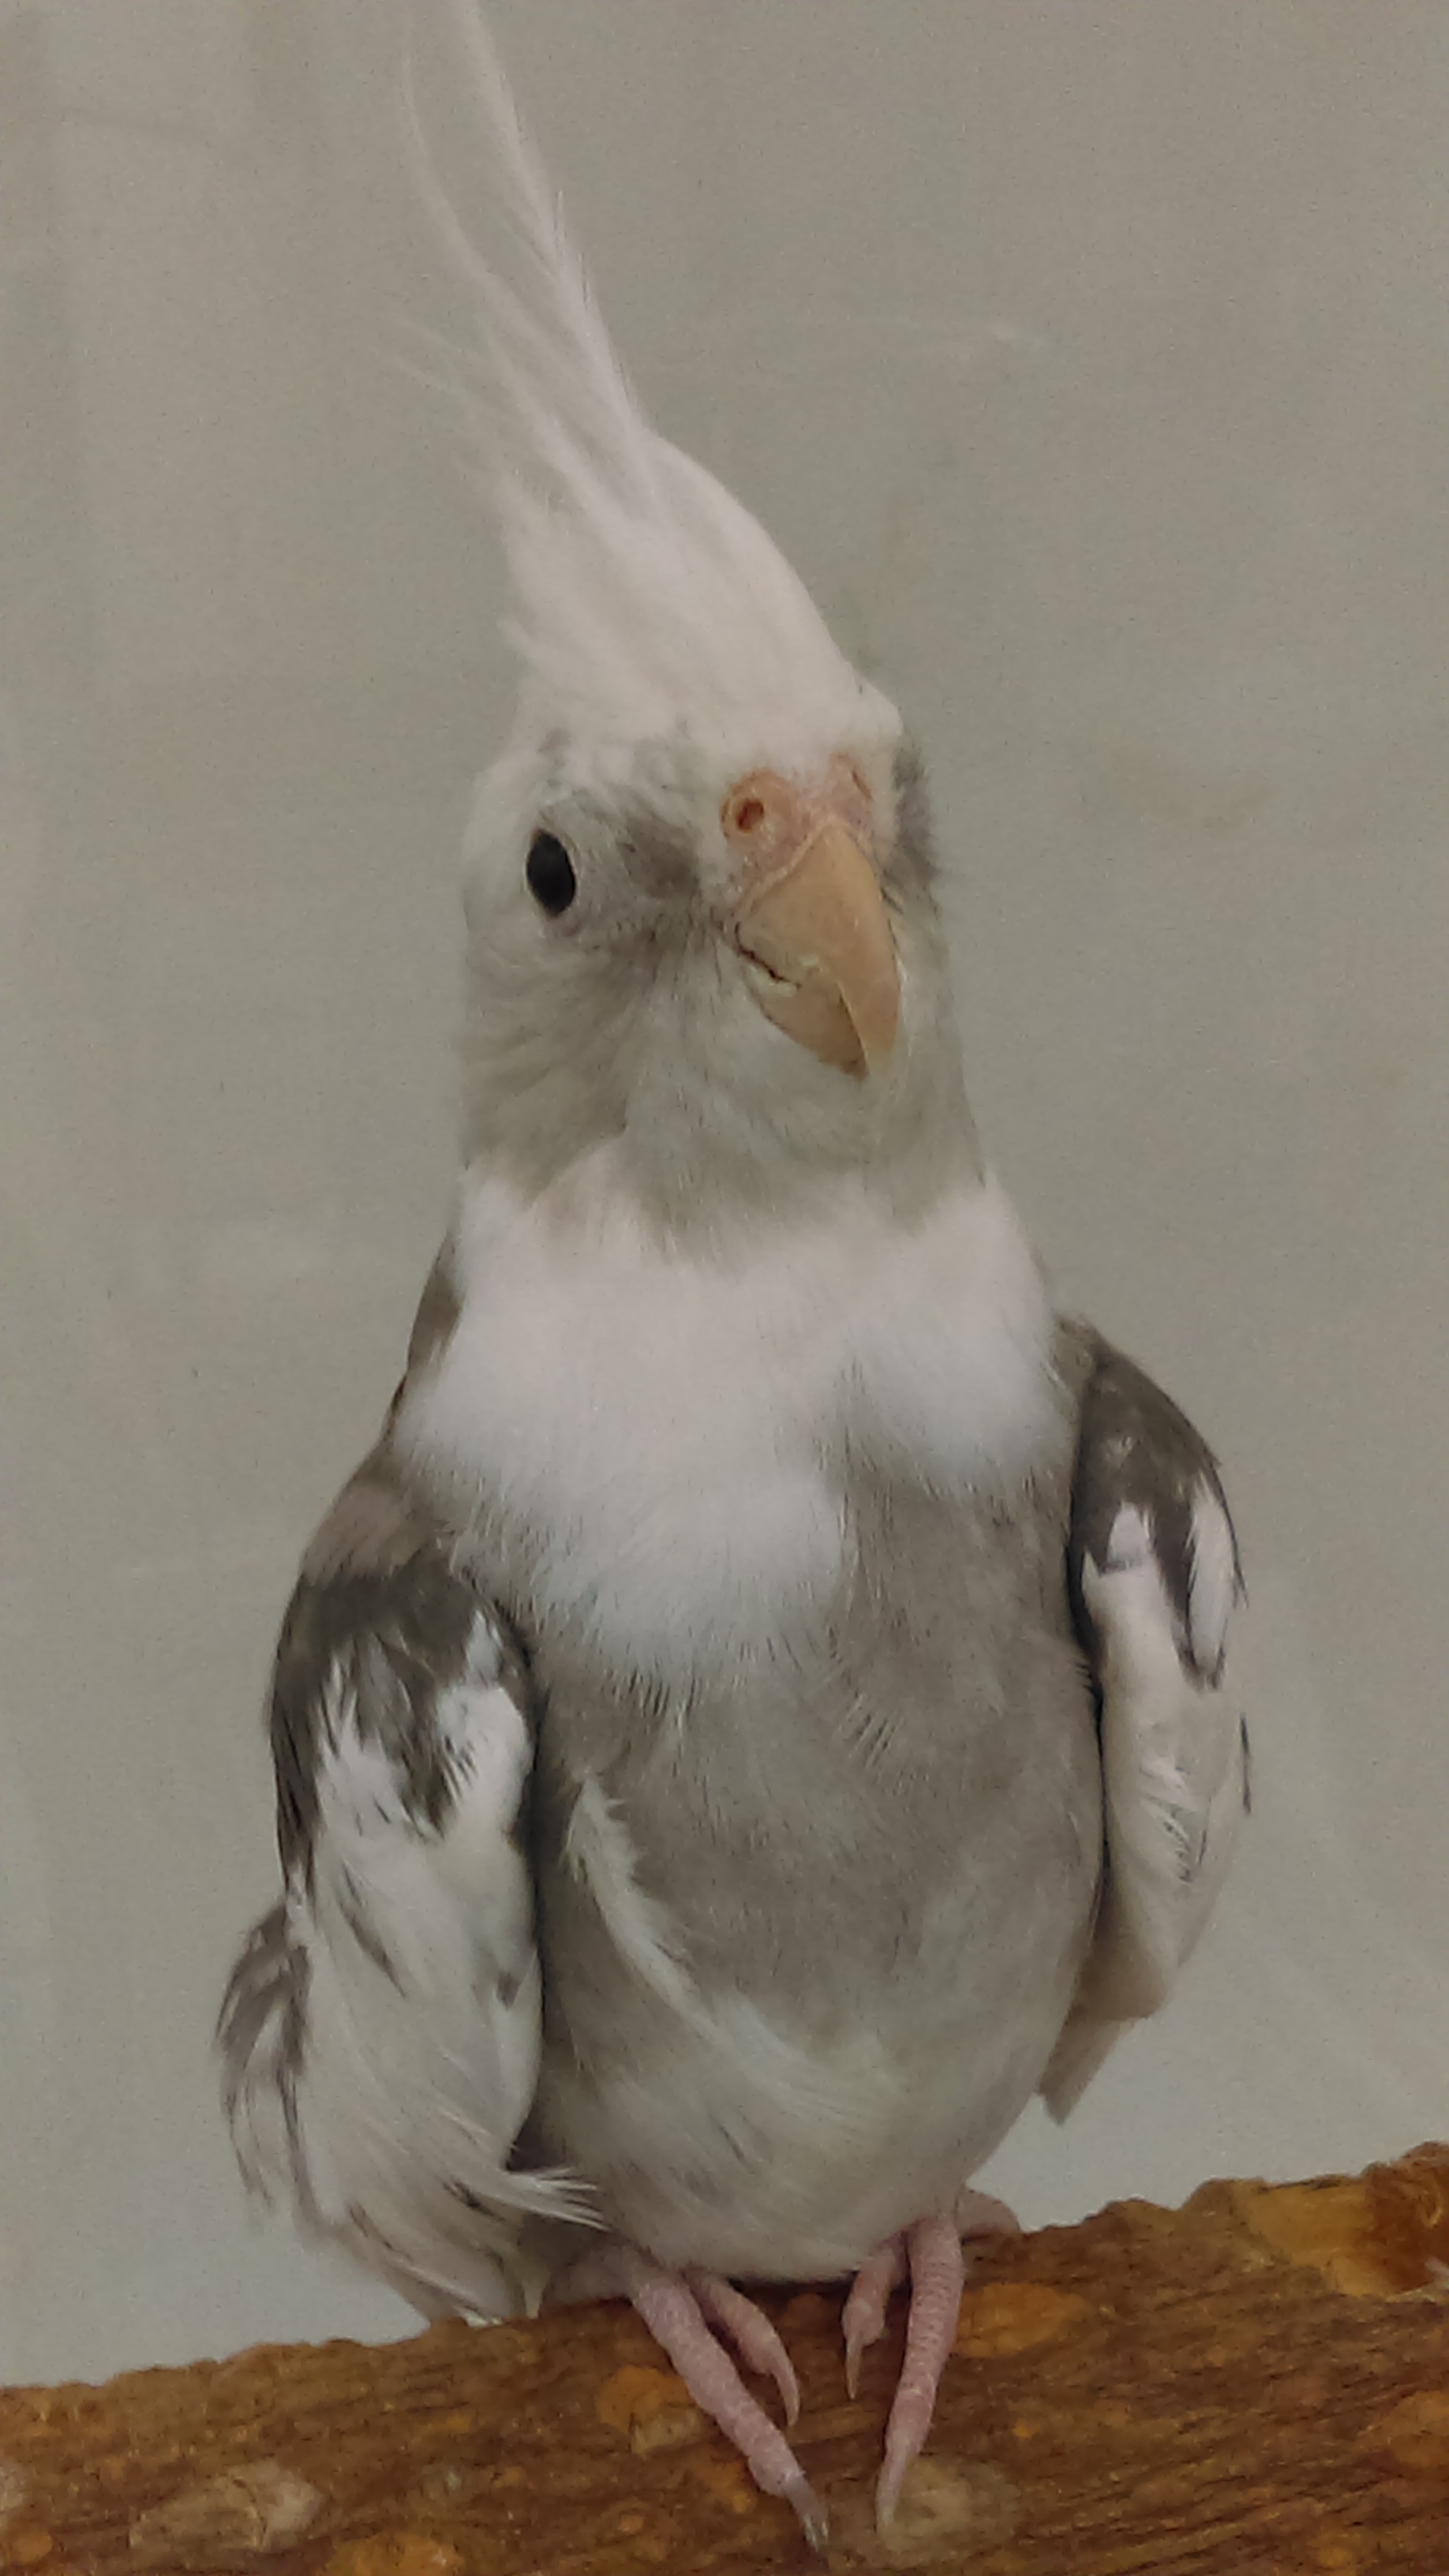 albino cockatiel bird